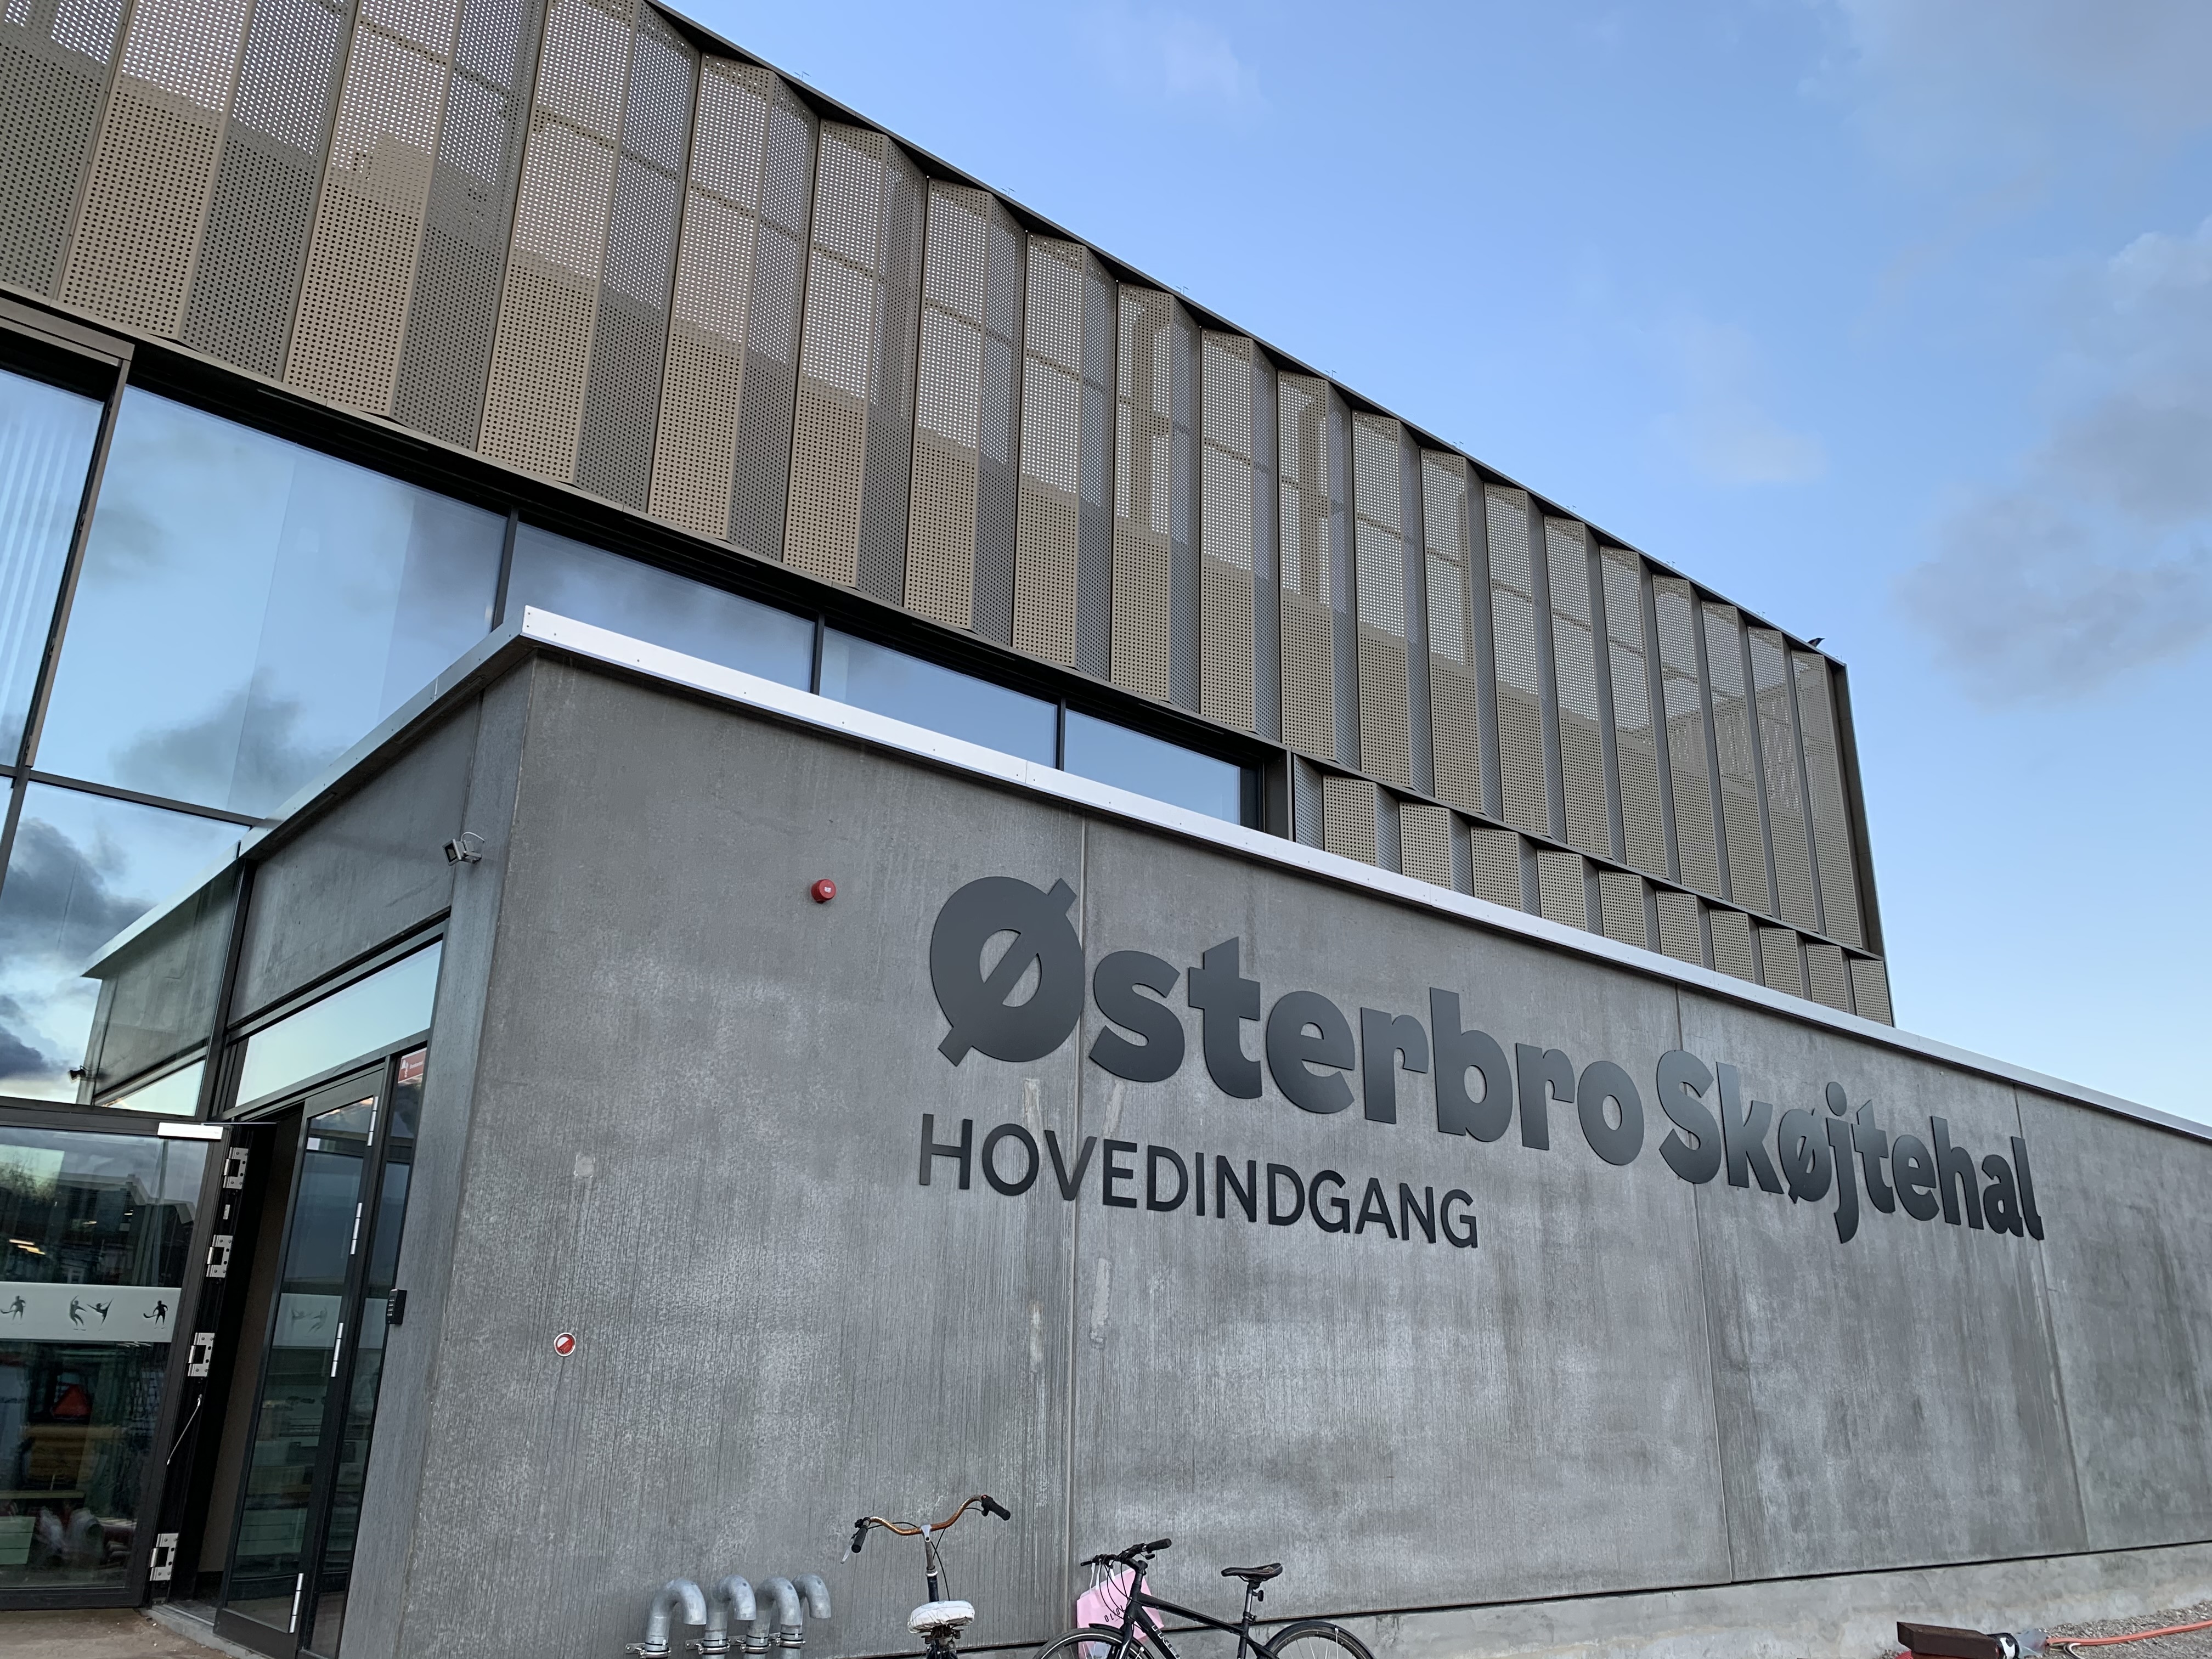 skøjtehal i København: Østerbro Skøjtehal indvies | Københavns Kommune Kultur- og